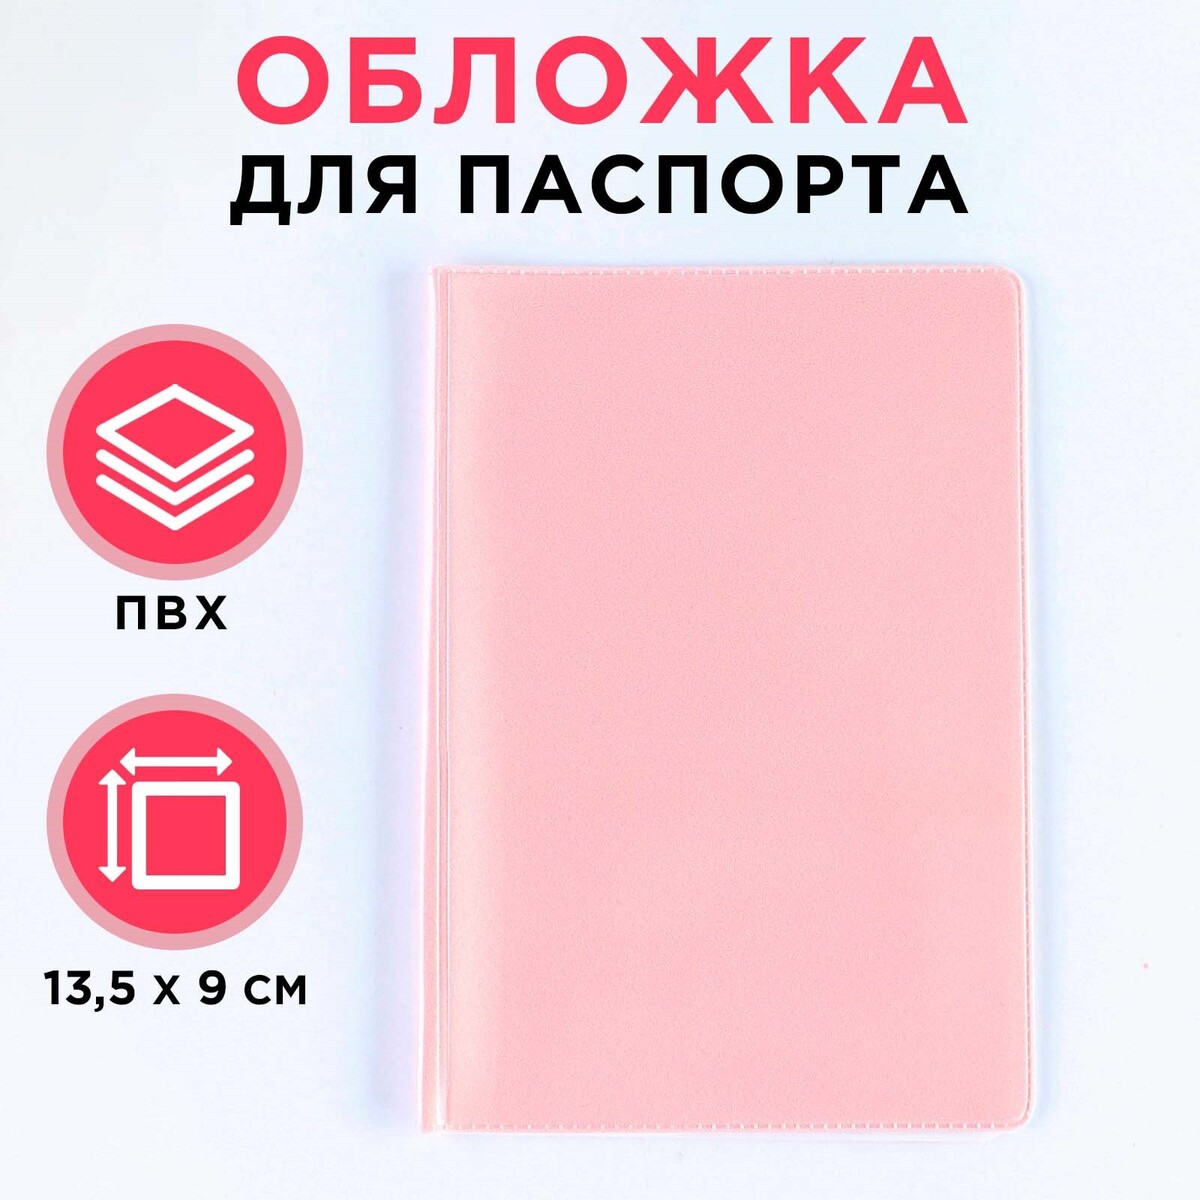 Обложка для паспорта, пвх, цвет персиковый No brand